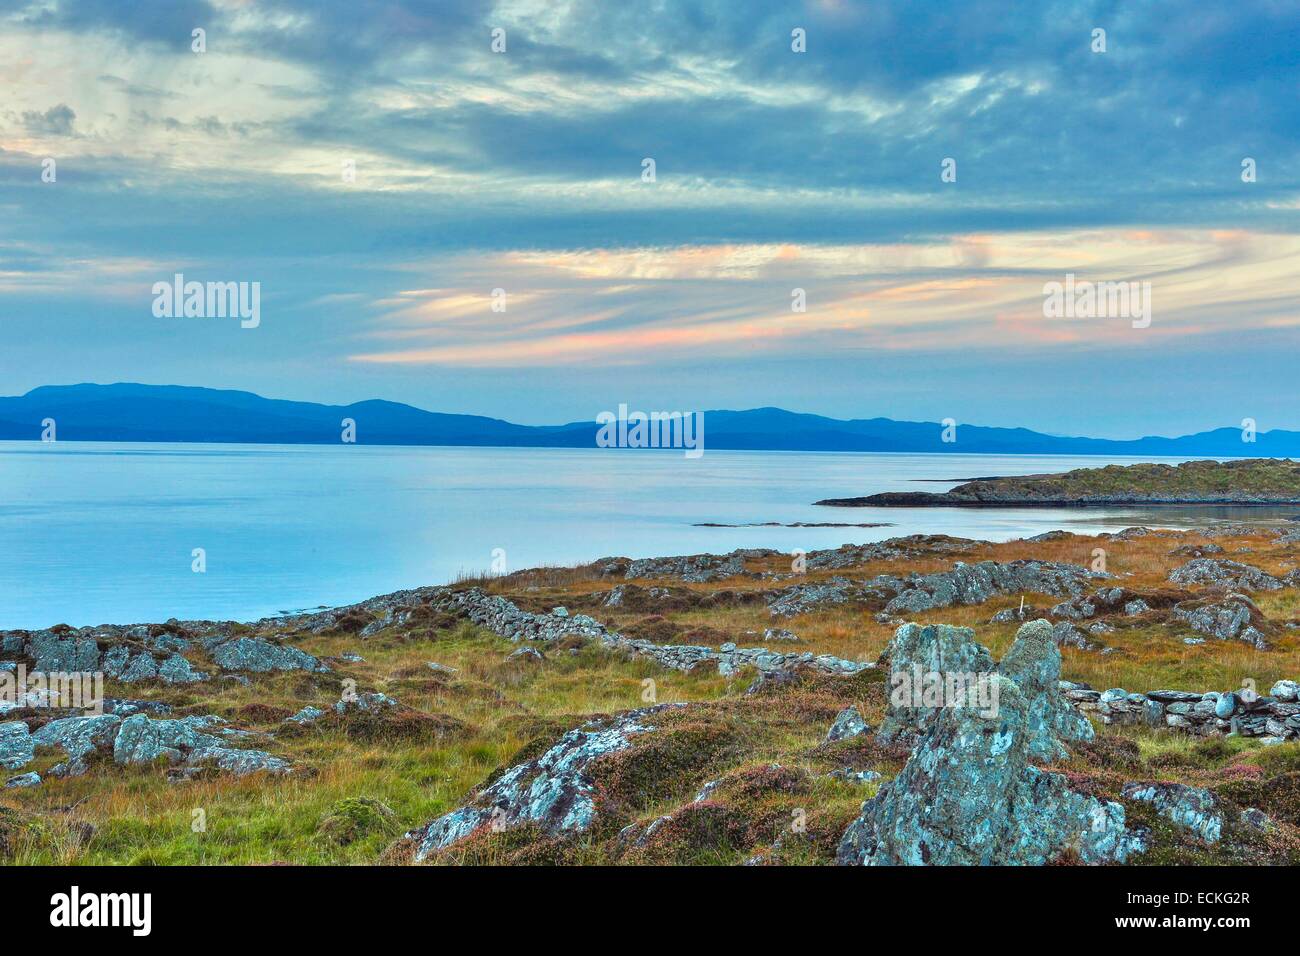 Großbritannien, Schottland, Argyll und Bute, Keillmore, Loch Sween, horizontale Ansicht von Küsten Heide und Steinen bei Sonnenuntergang Stockfoto